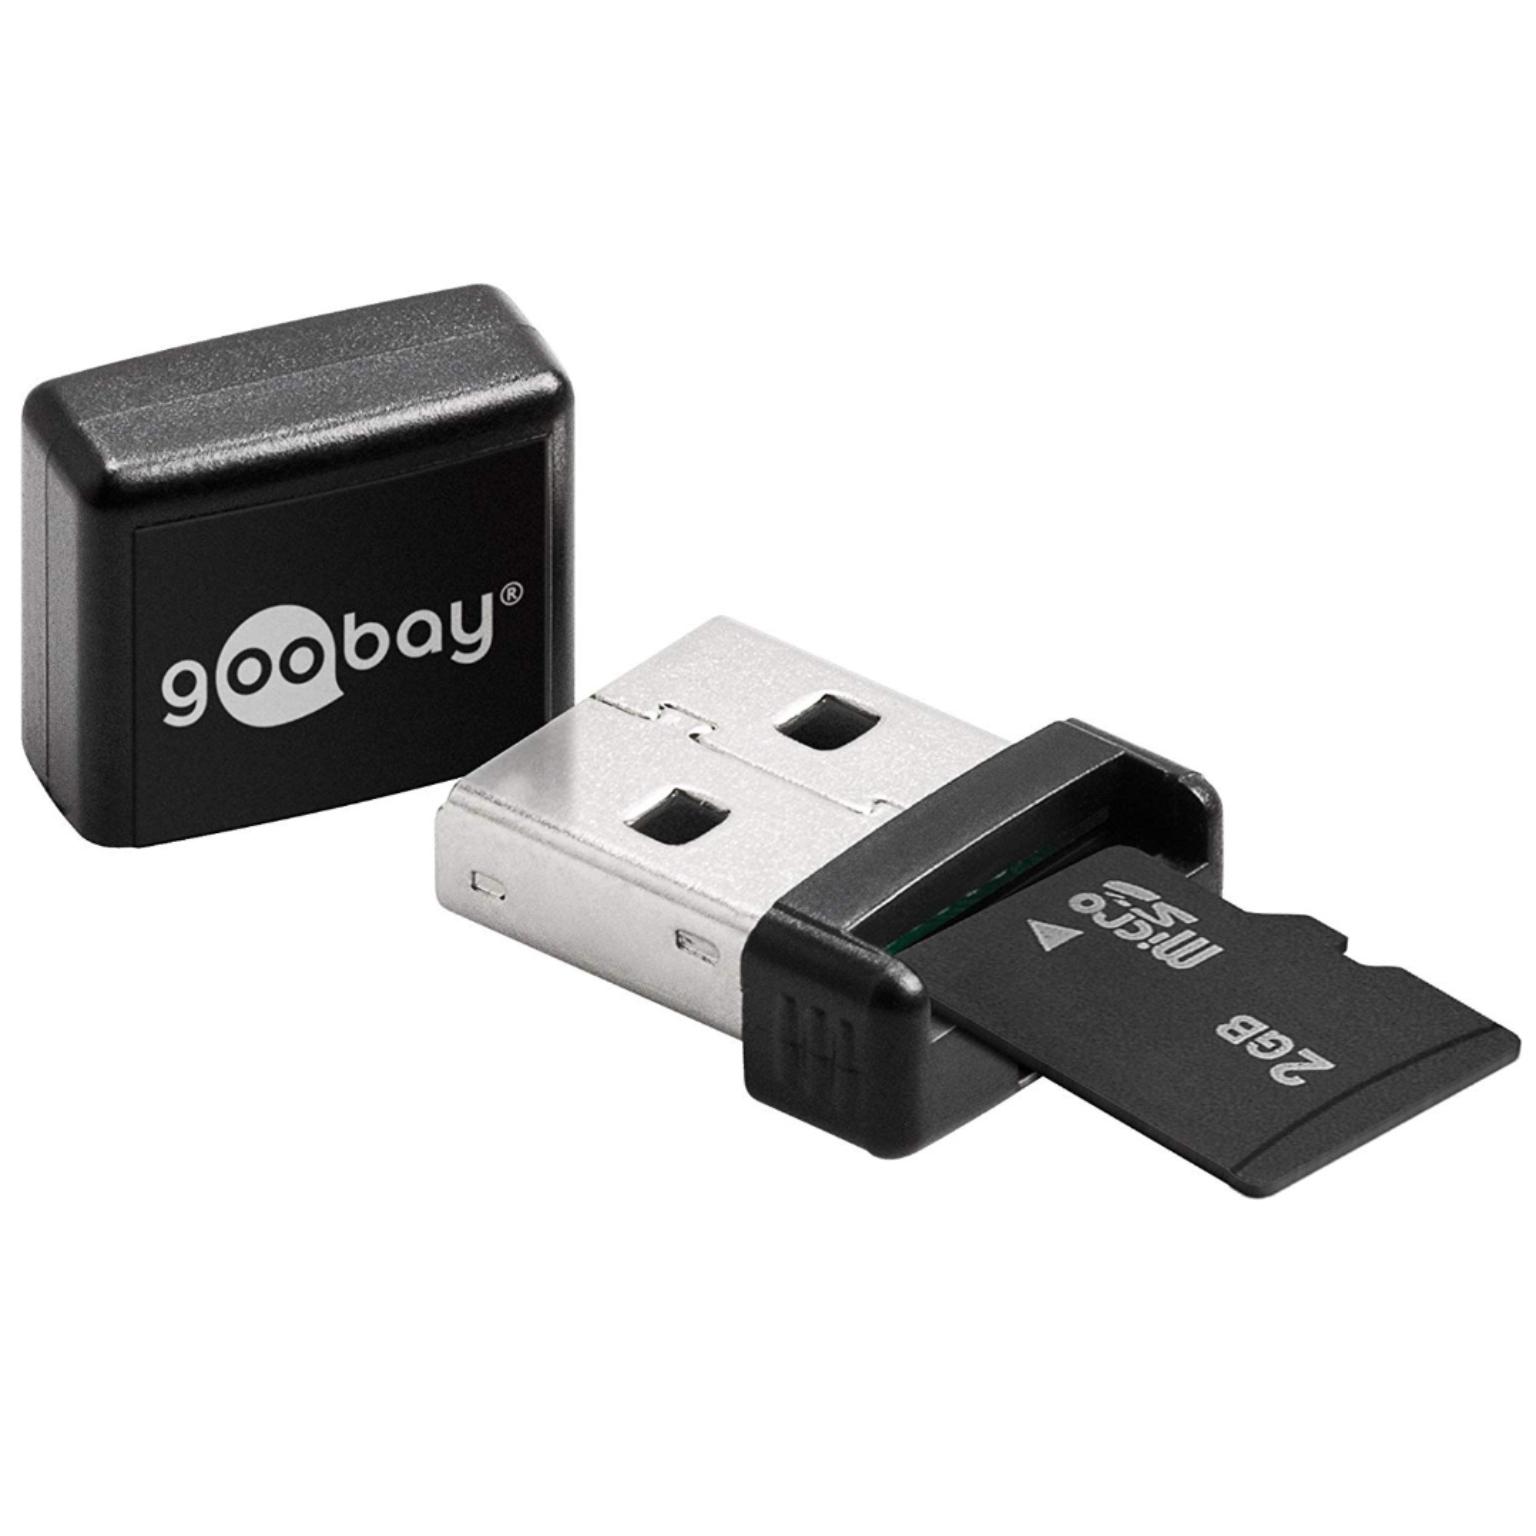 USB kaartlezer - Goobay